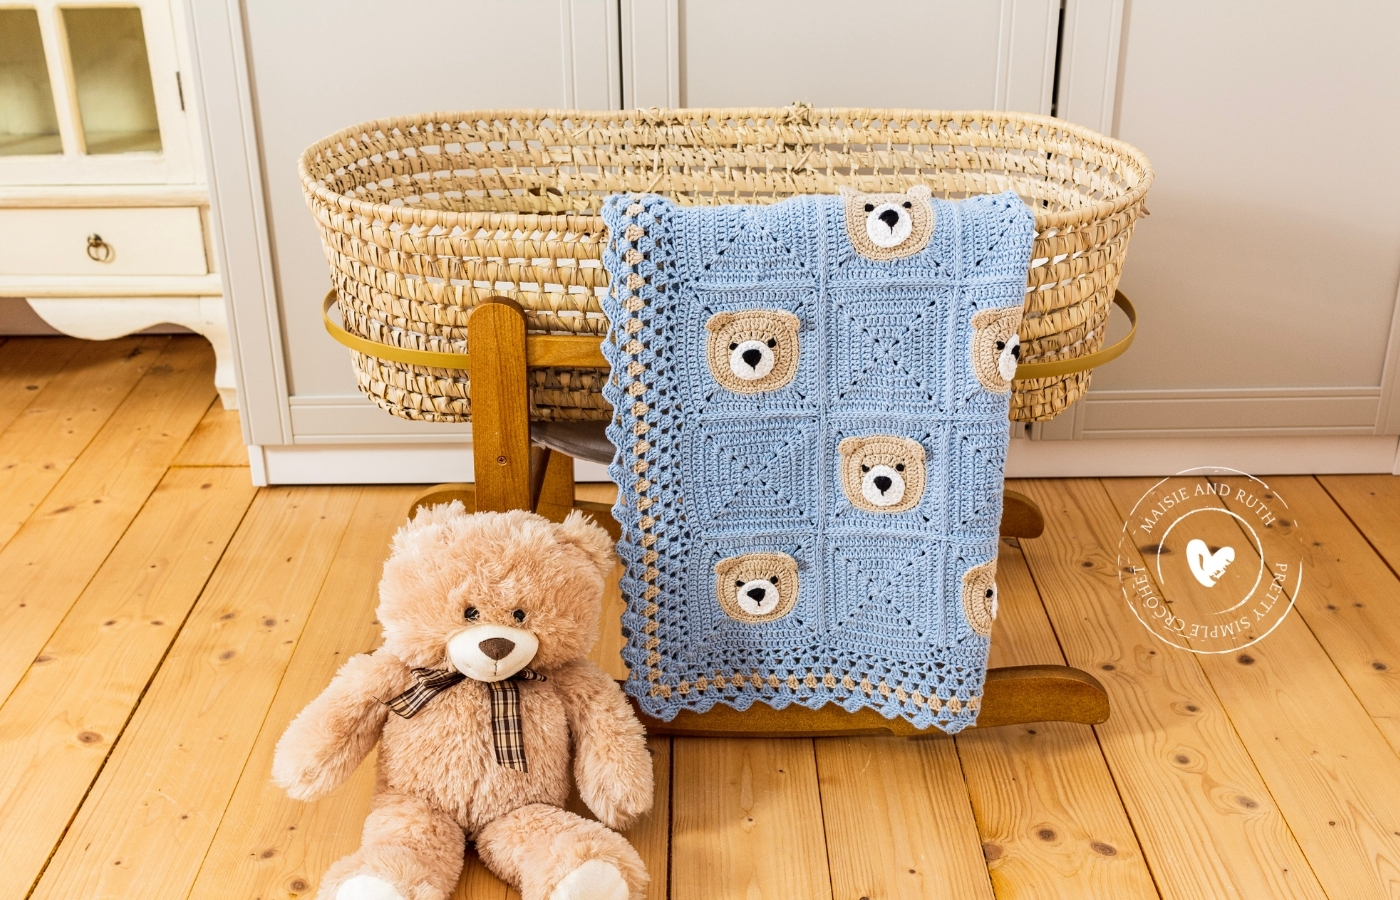 Bear Crochet Baby Blanket Teddy on floor beside bassinet